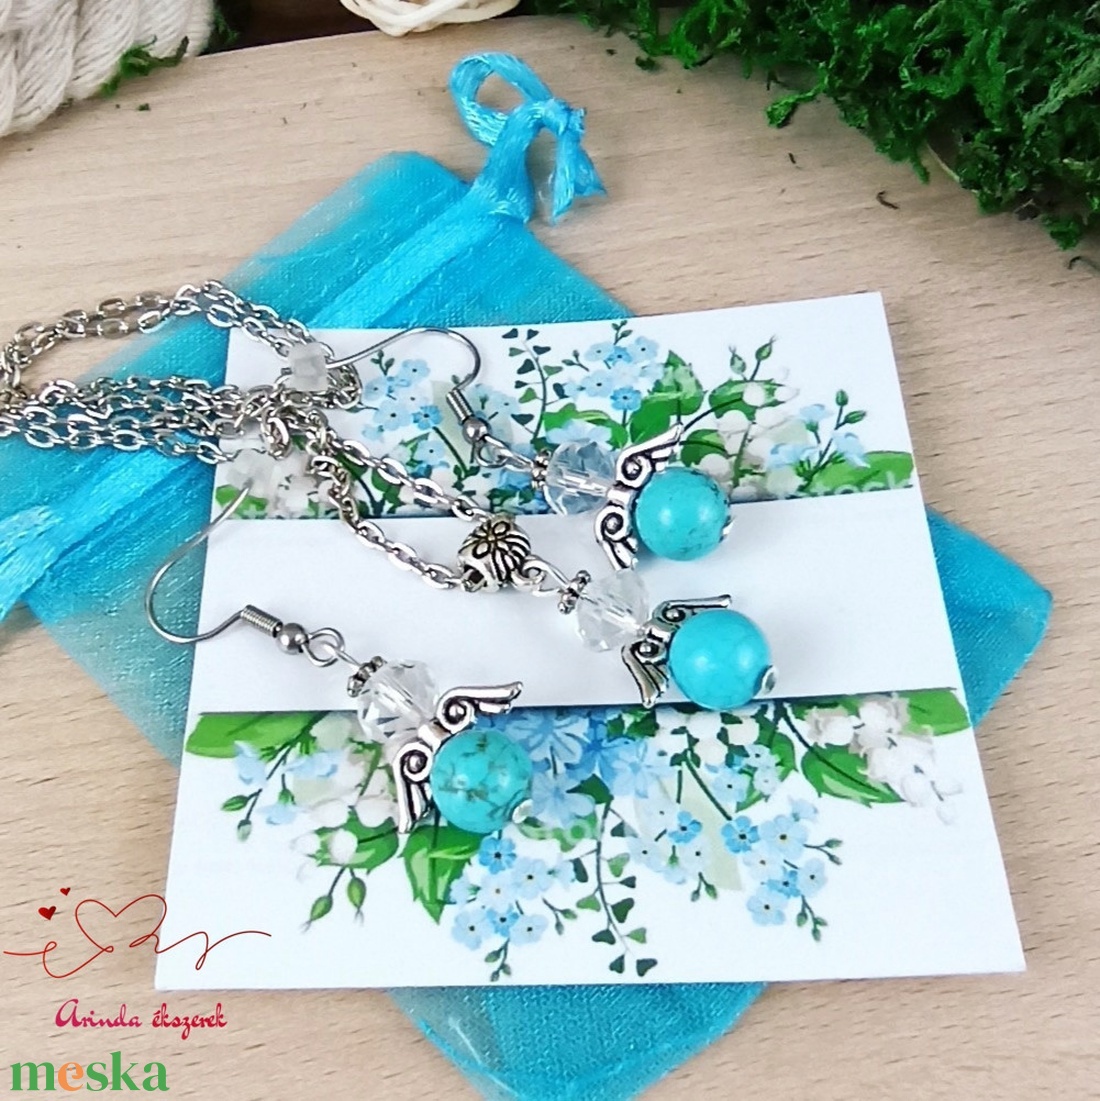 Önbizalom kék türkiz ásvány angyal nyaklánc fülbevaló szett karácsonyi ajándék ötlet nőnek lánynak - ékszer - ékszerszett - Meska.hu